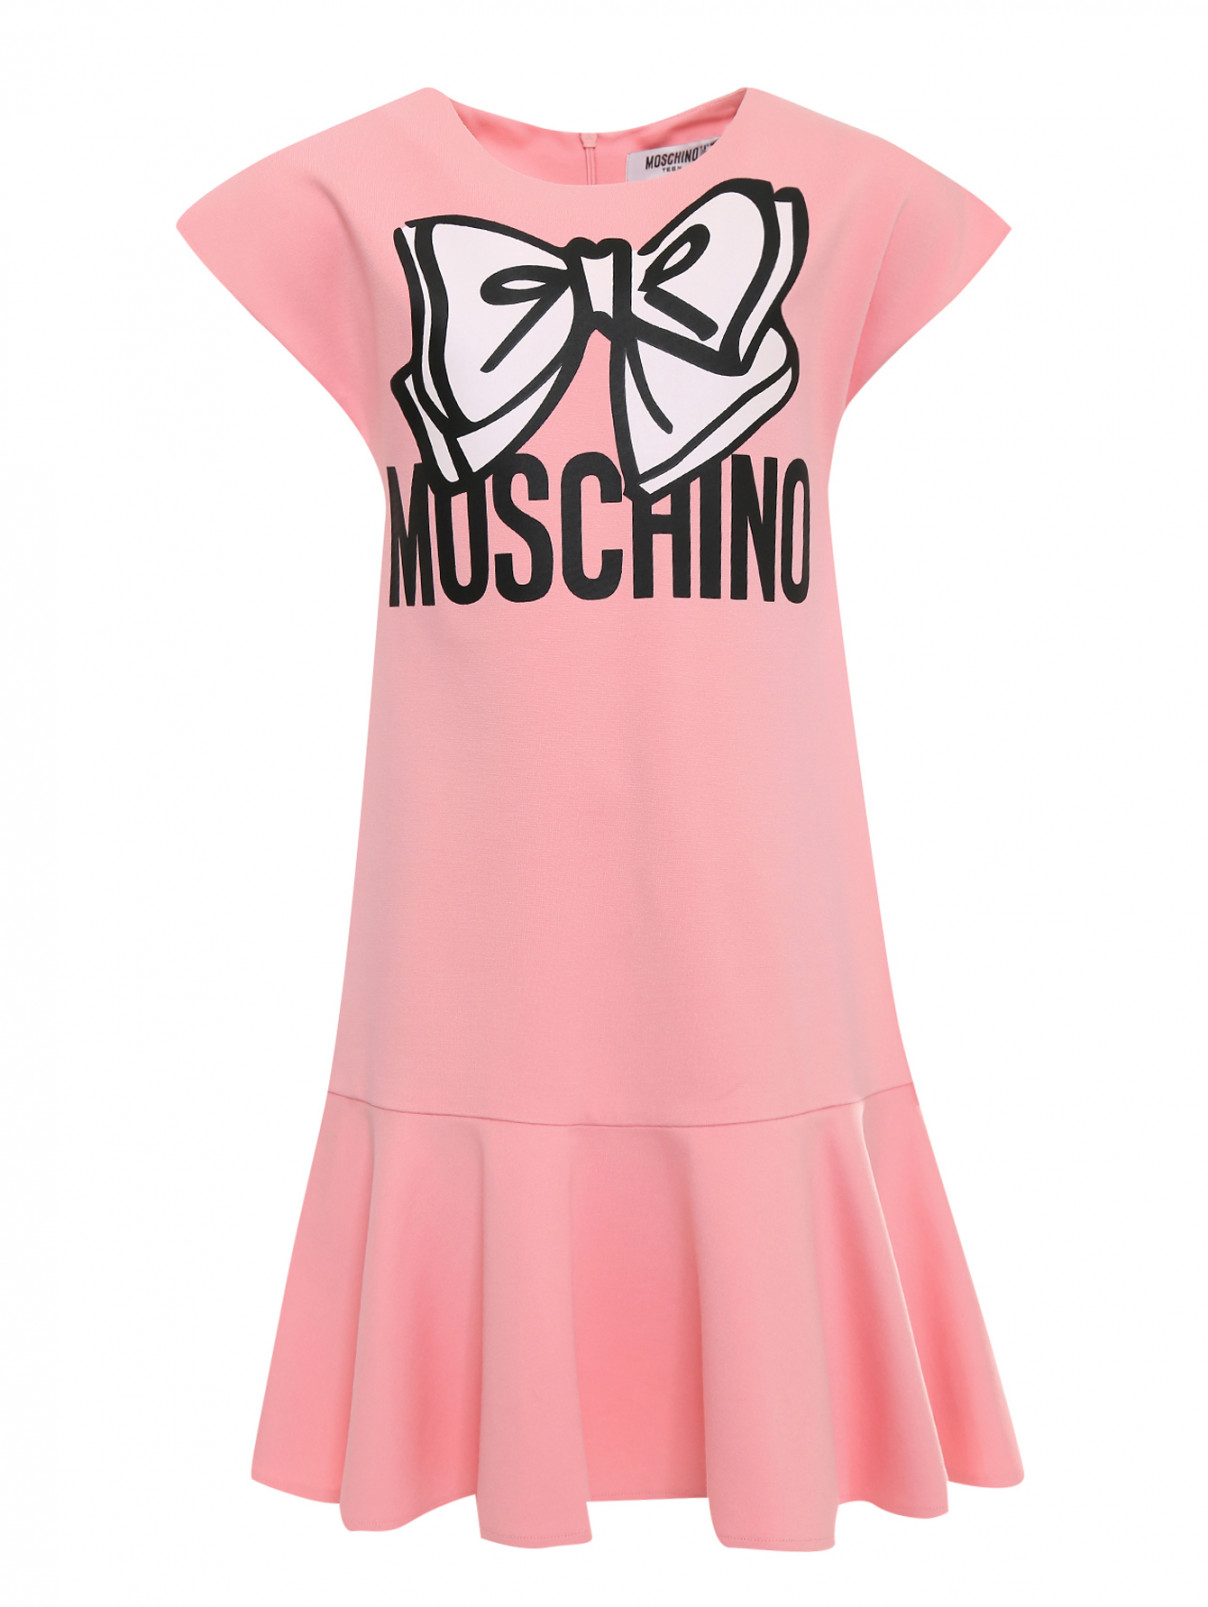 Платье трикотажное с принтом Moschino Teen  –  Общий вид  – Цвет:  Розовый